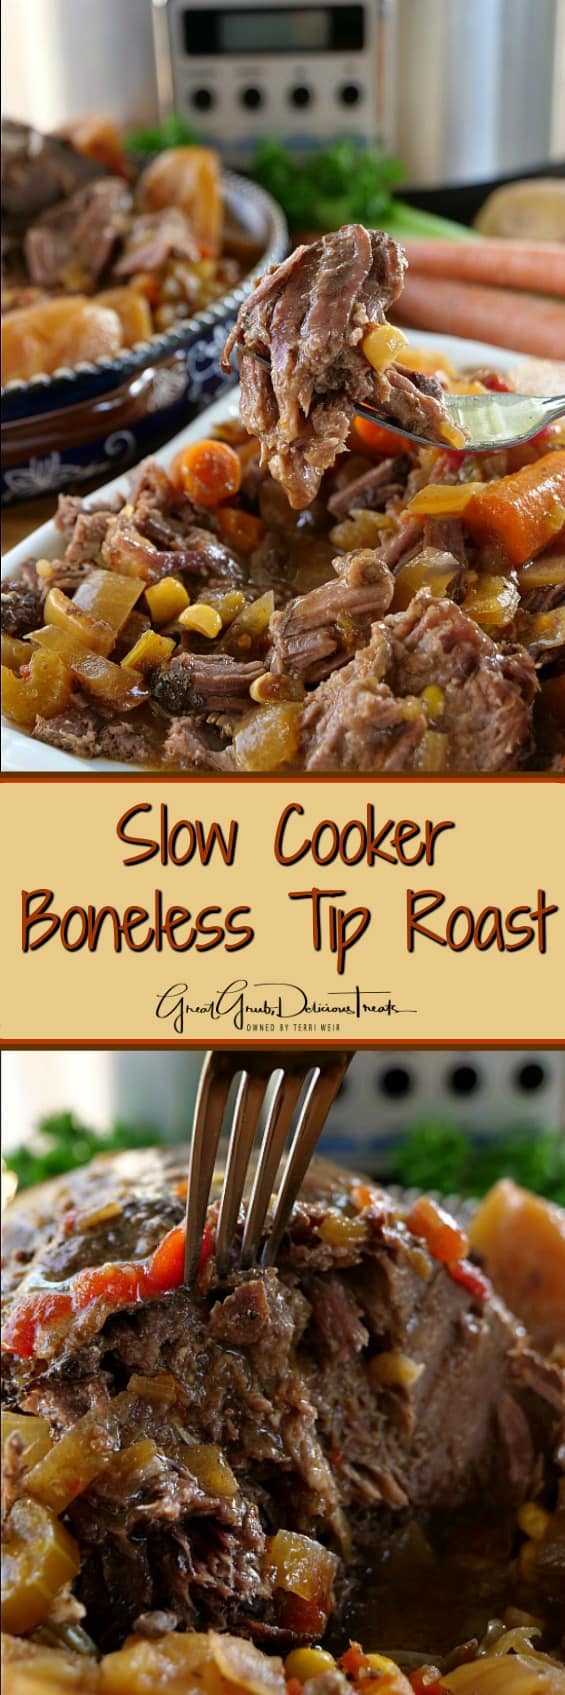 Slow Cooker Boneless Tip Roast